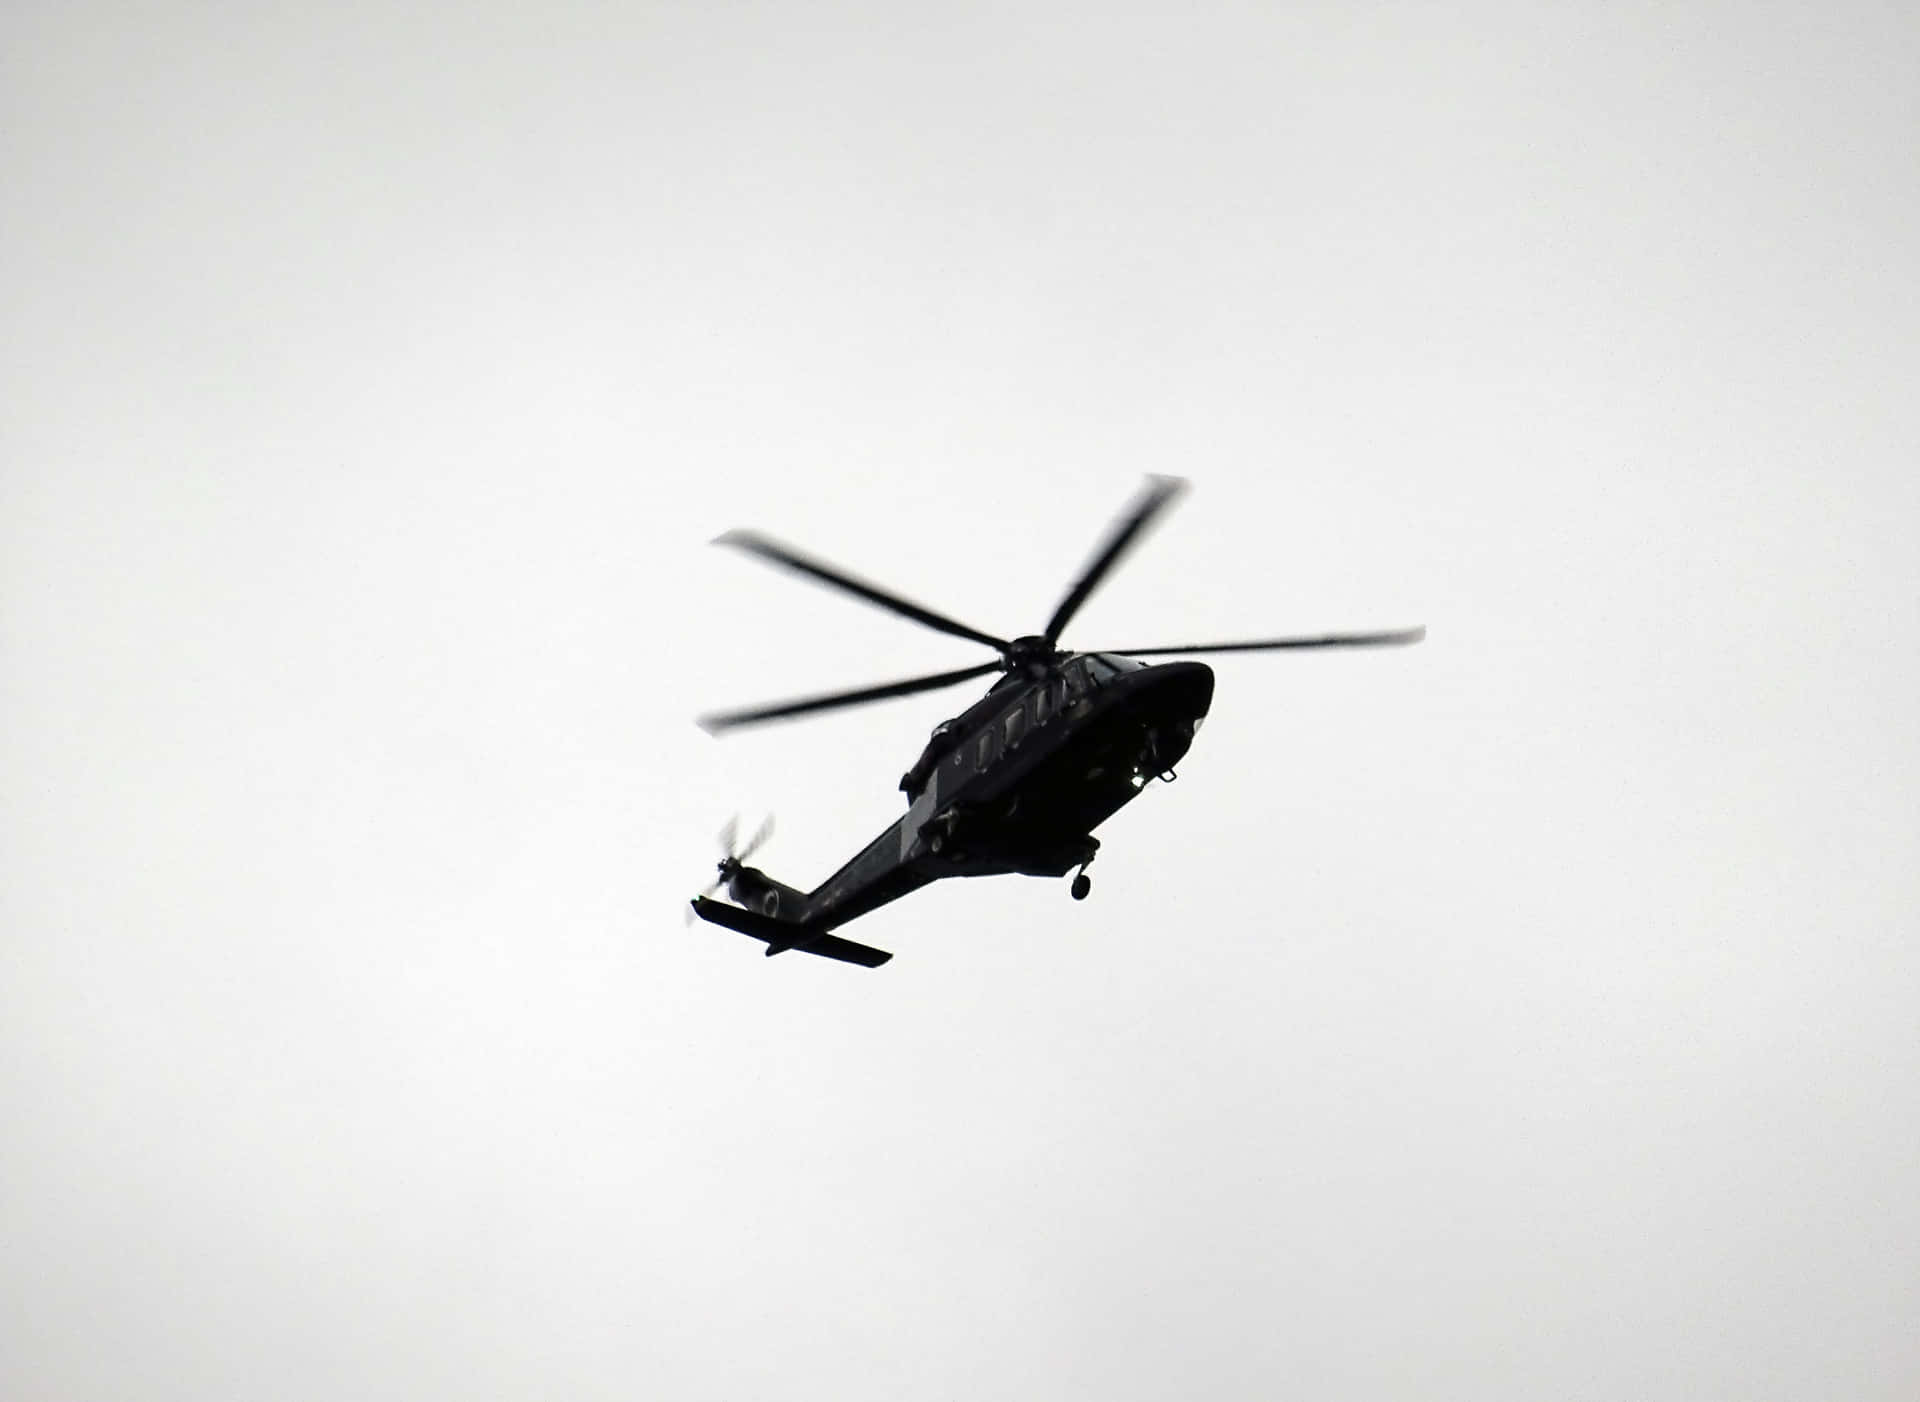 Hubschrauber5184 X 3786 Bild